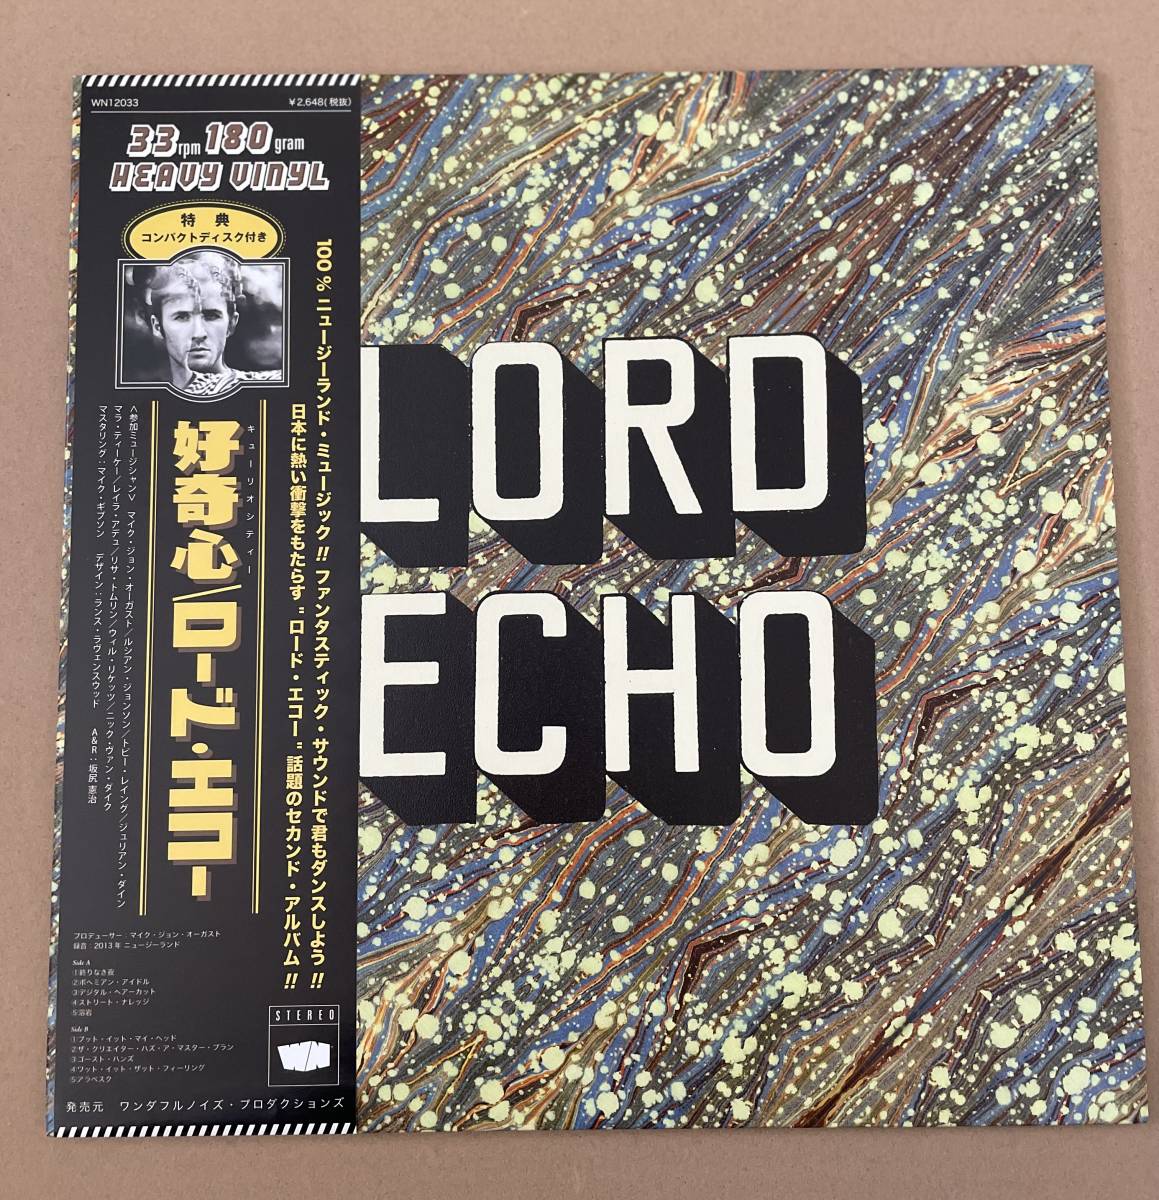 ヤフオク! -「lord echo」(音楽) の落札相場・落札価格